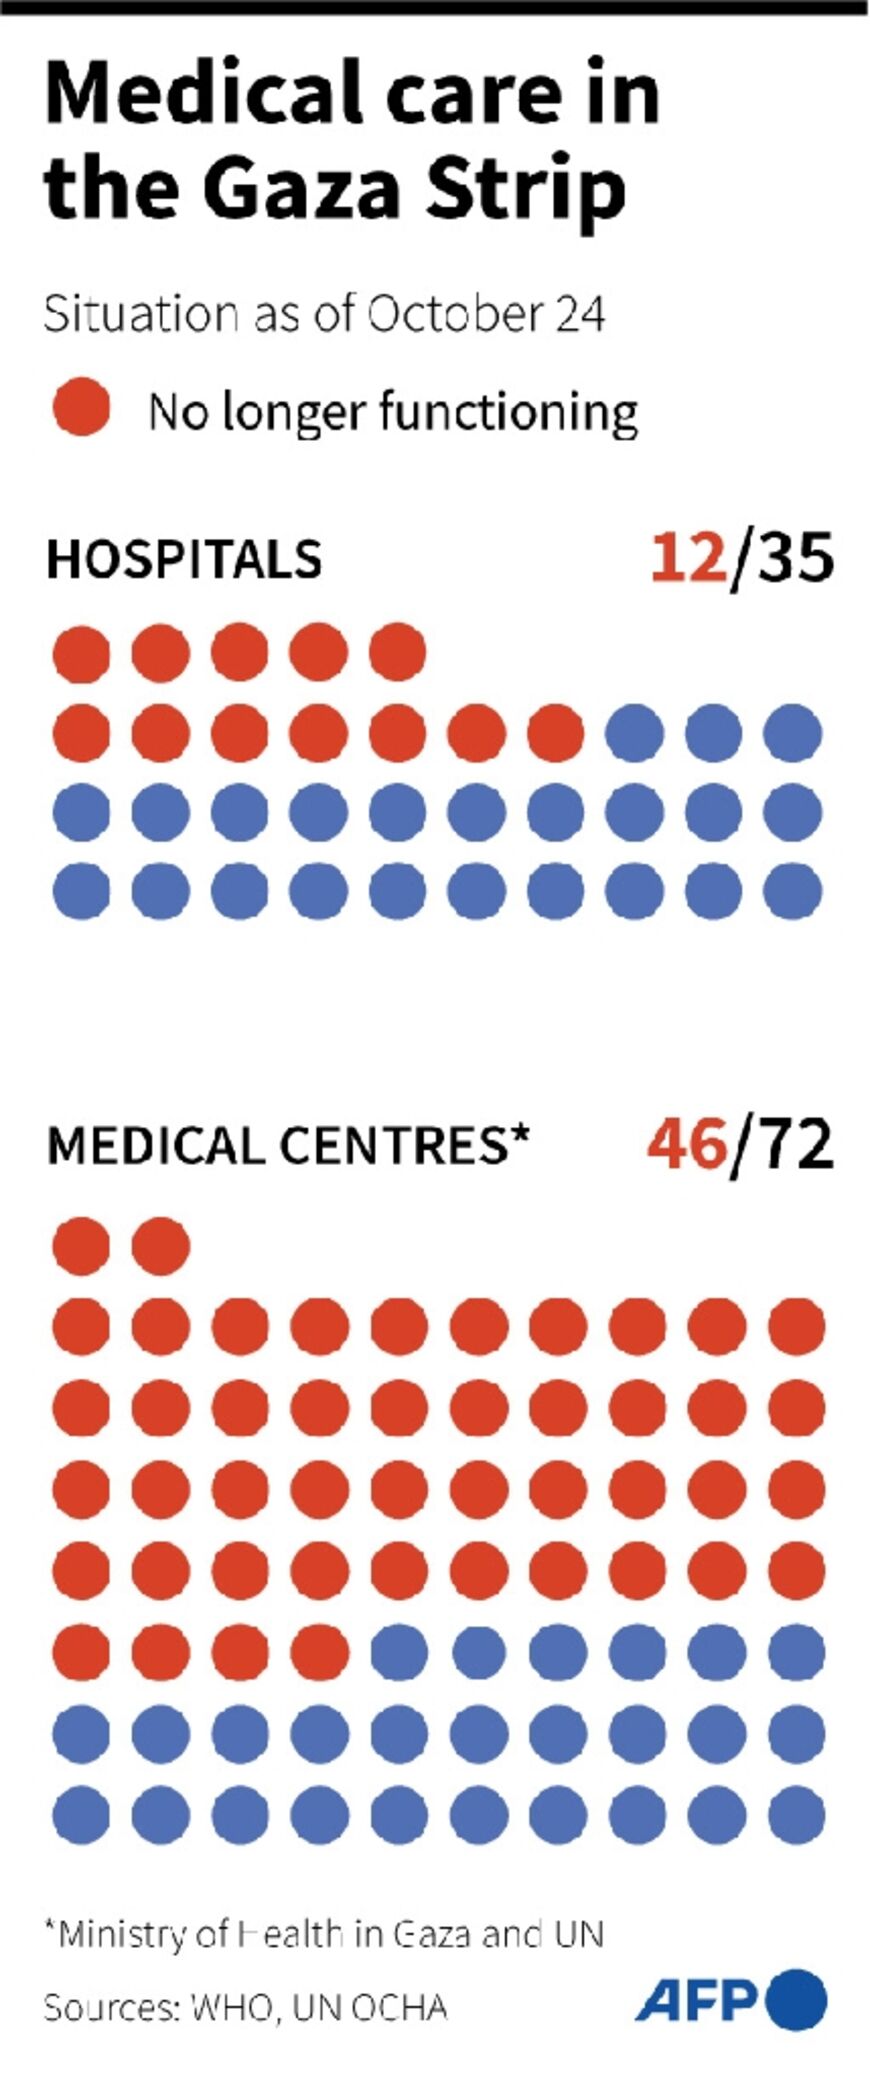 Medical care in the Gaza Strip